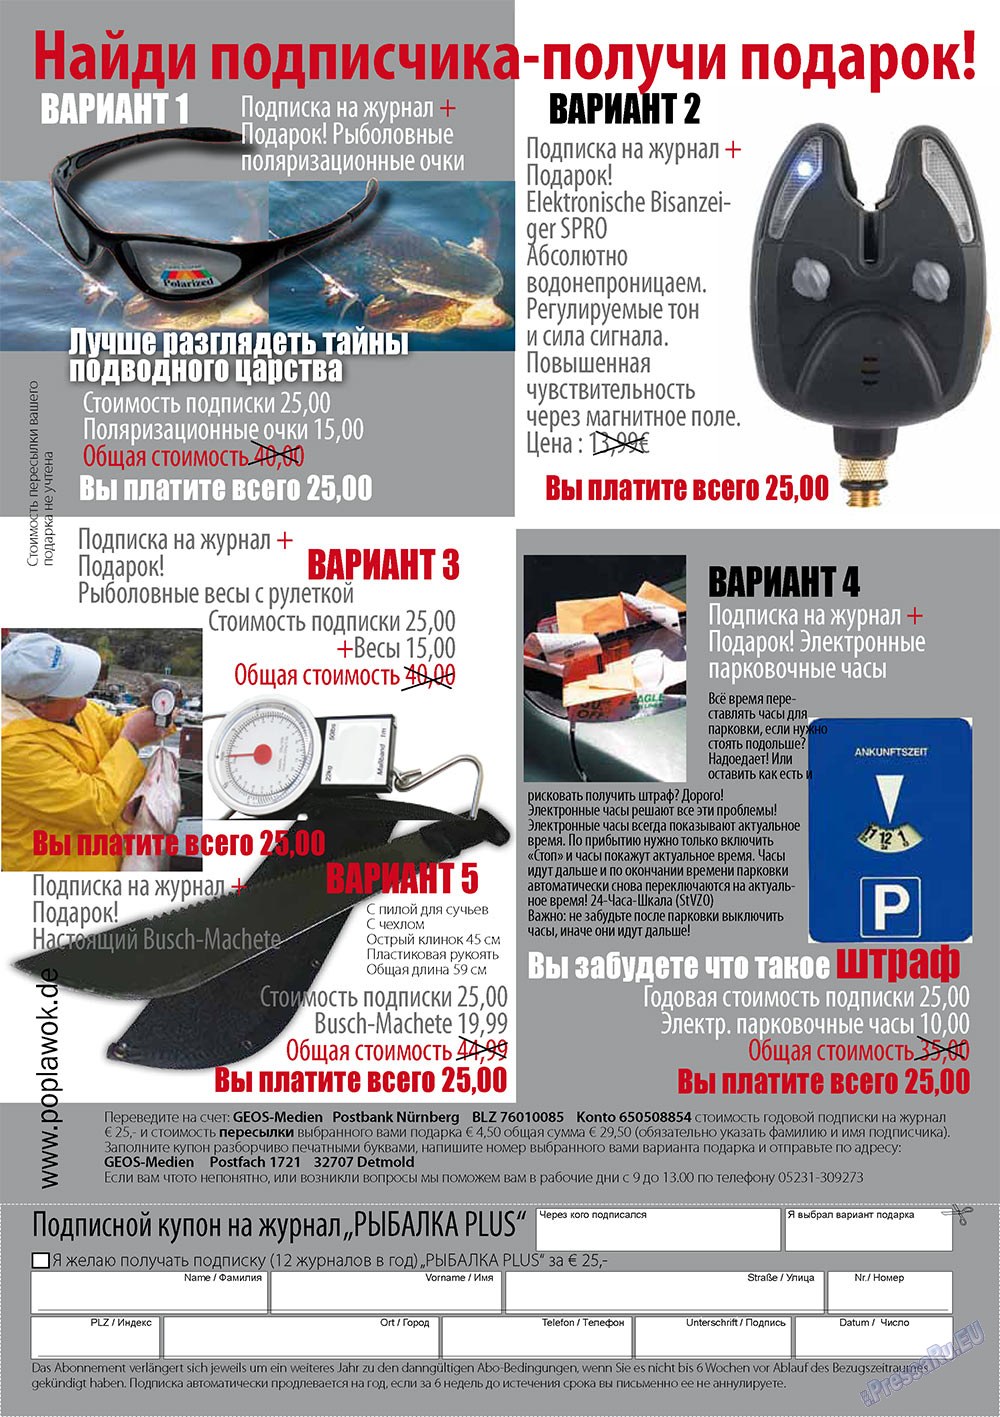 Рыбалка Plus, журнал. 2010 №11 стр.32